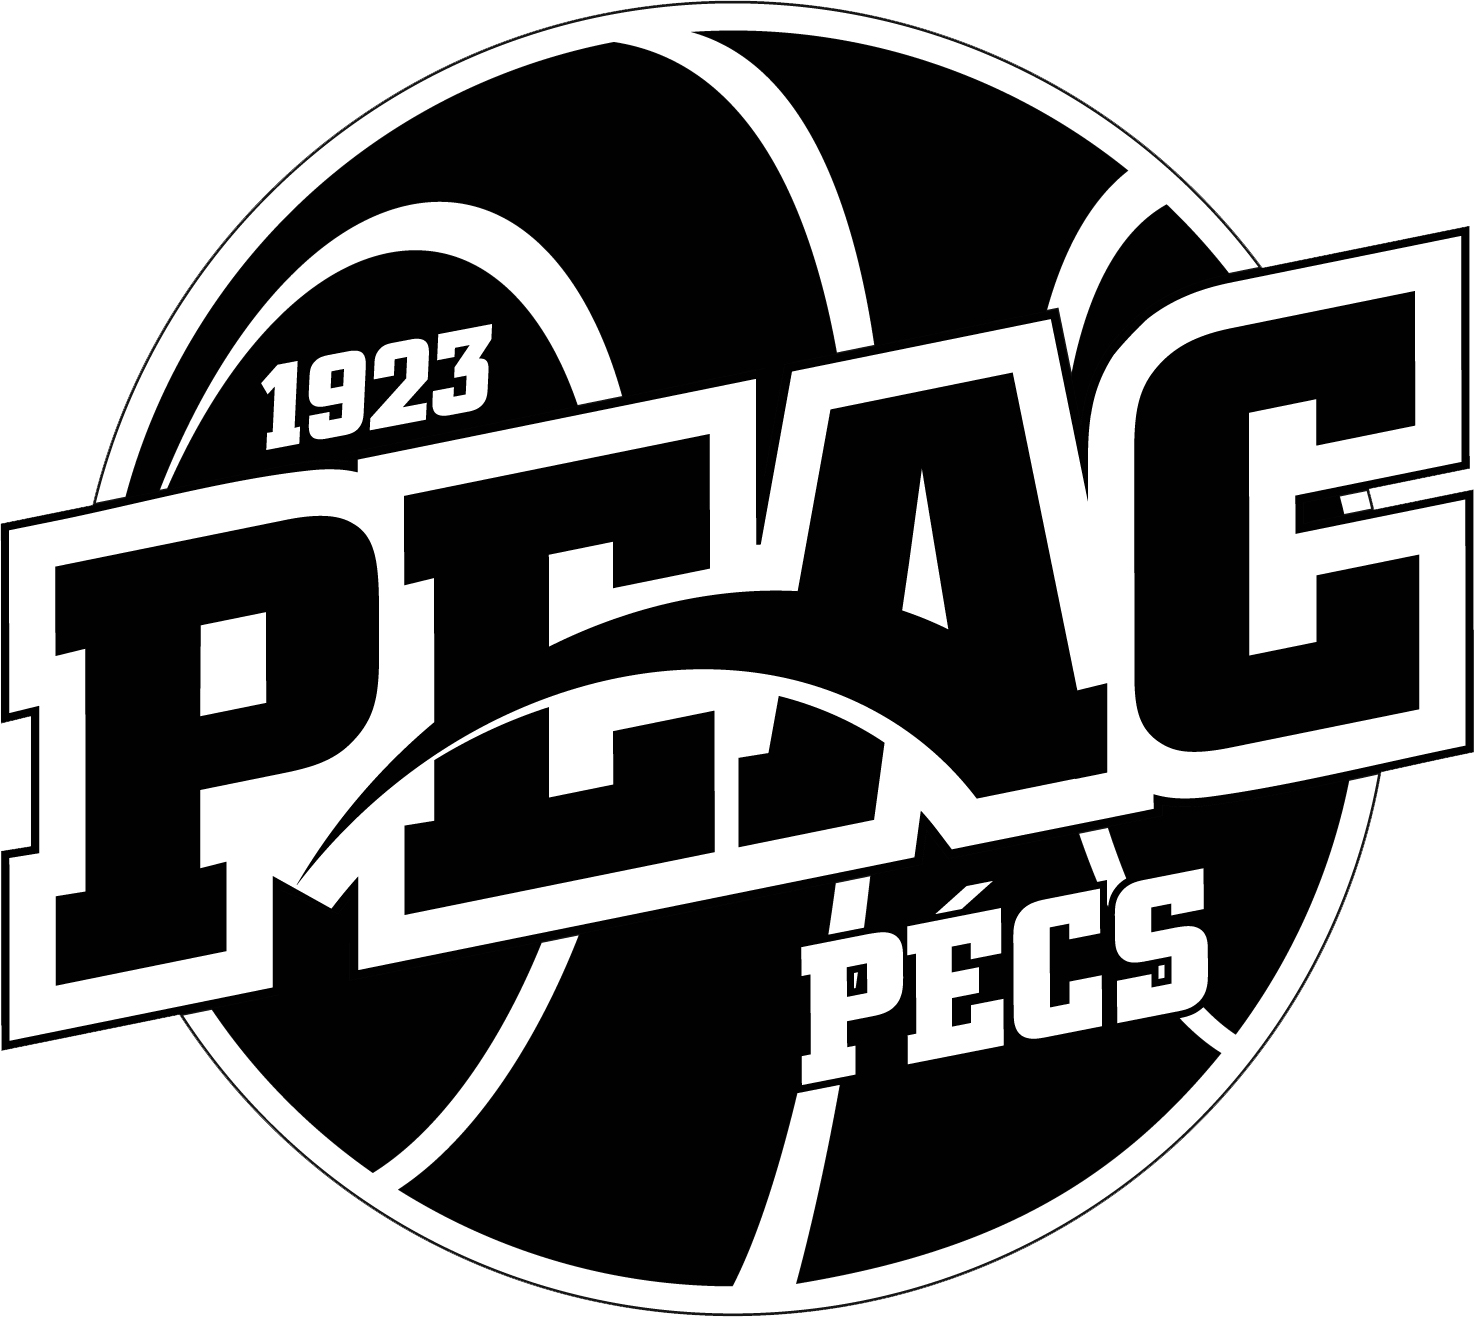 PEAC-Pécs Női Kosárlabda Klub